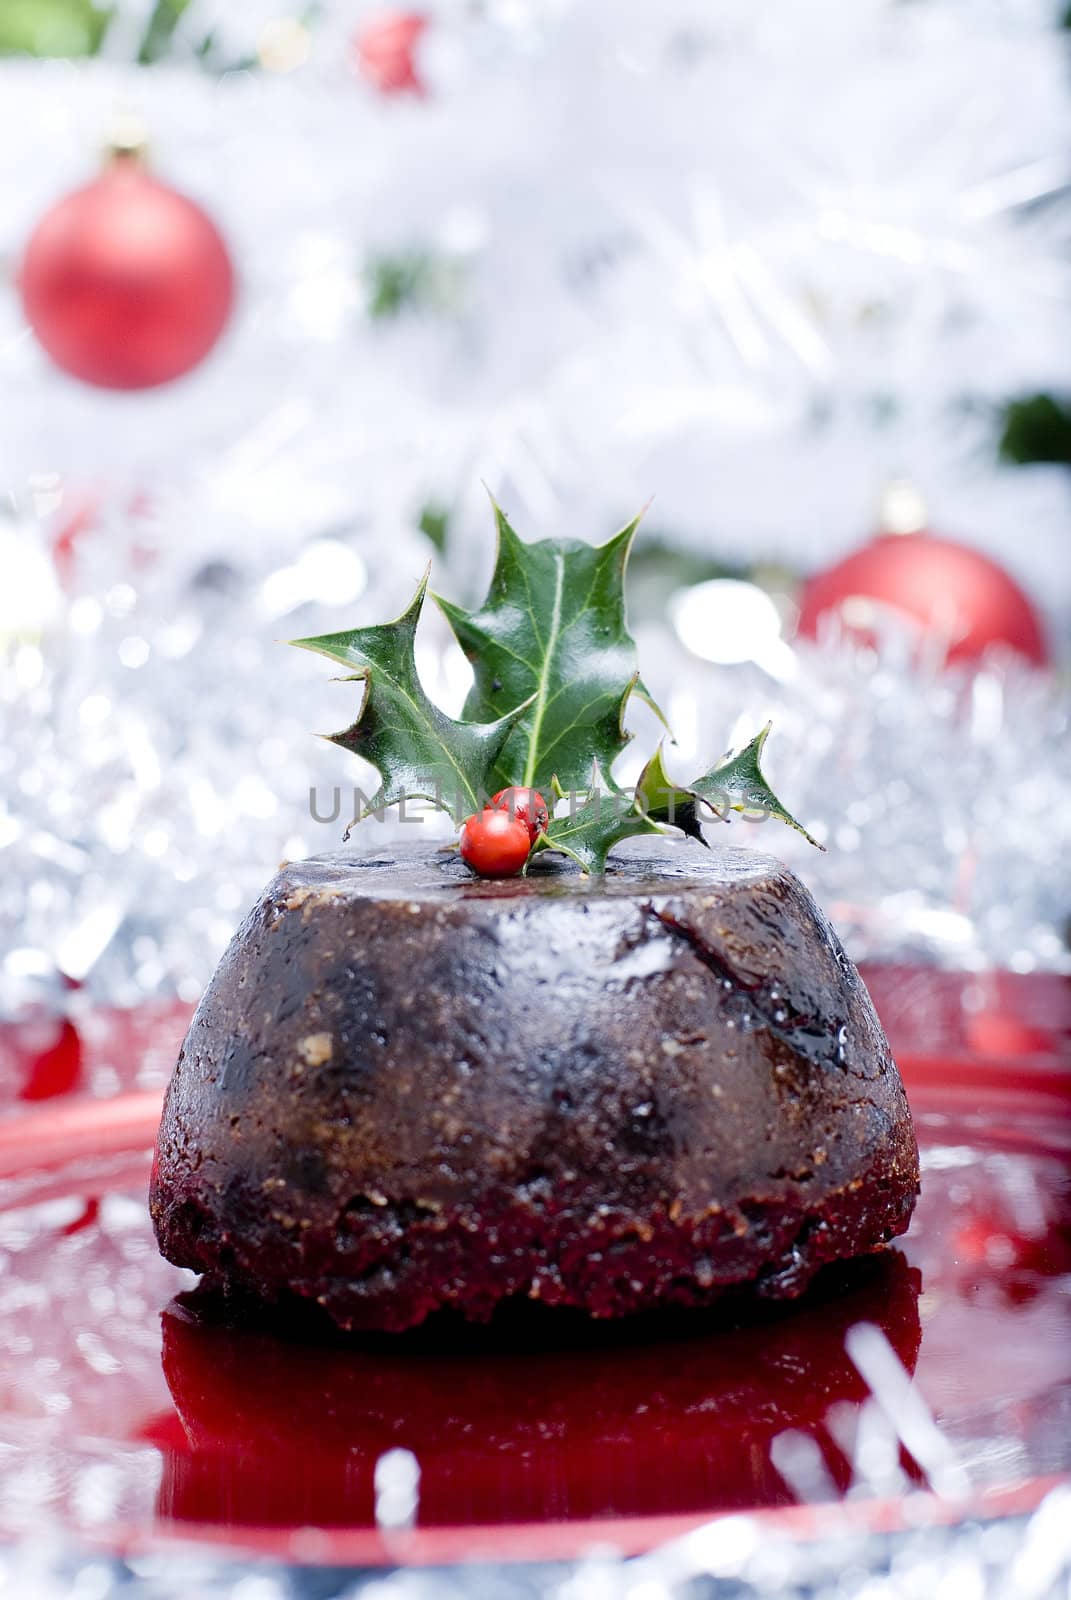 Christmas pudding by tomas24